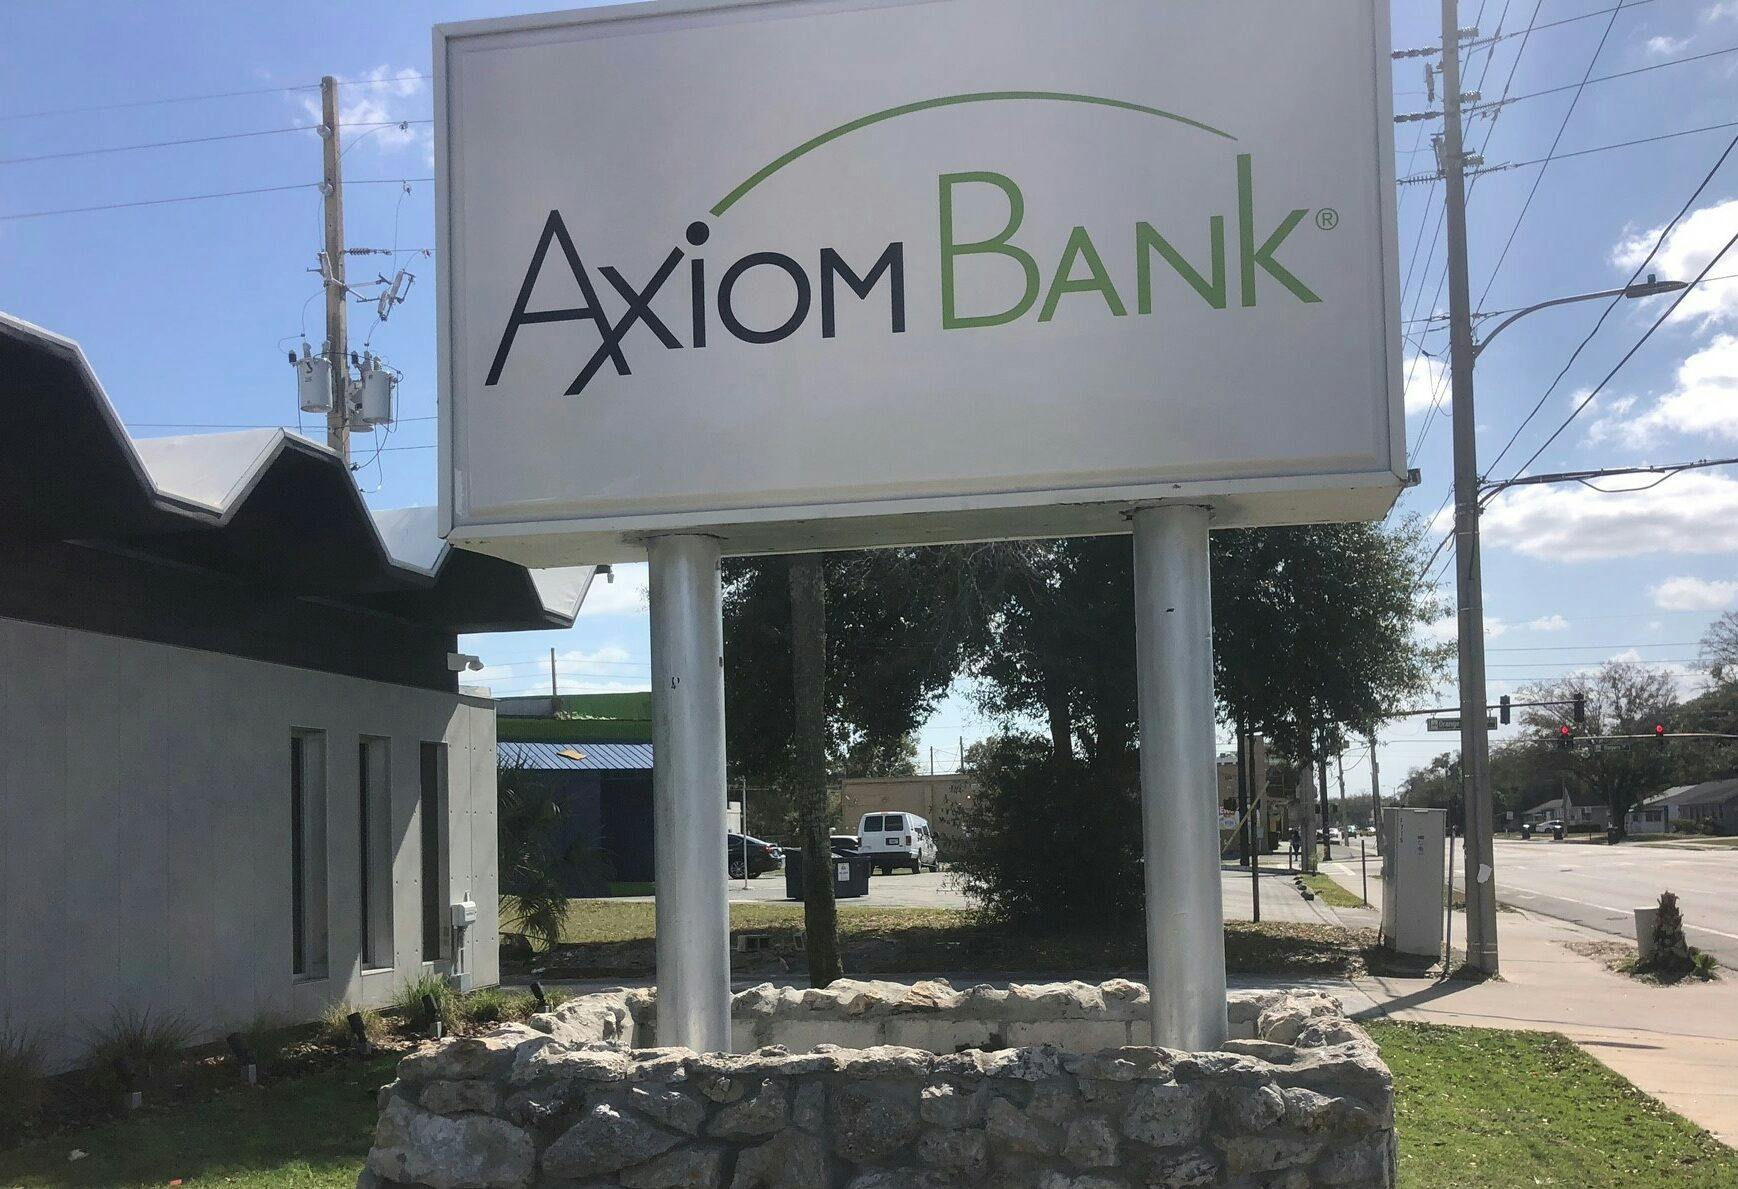 Axiom Bank sign at Goldwyn branch location